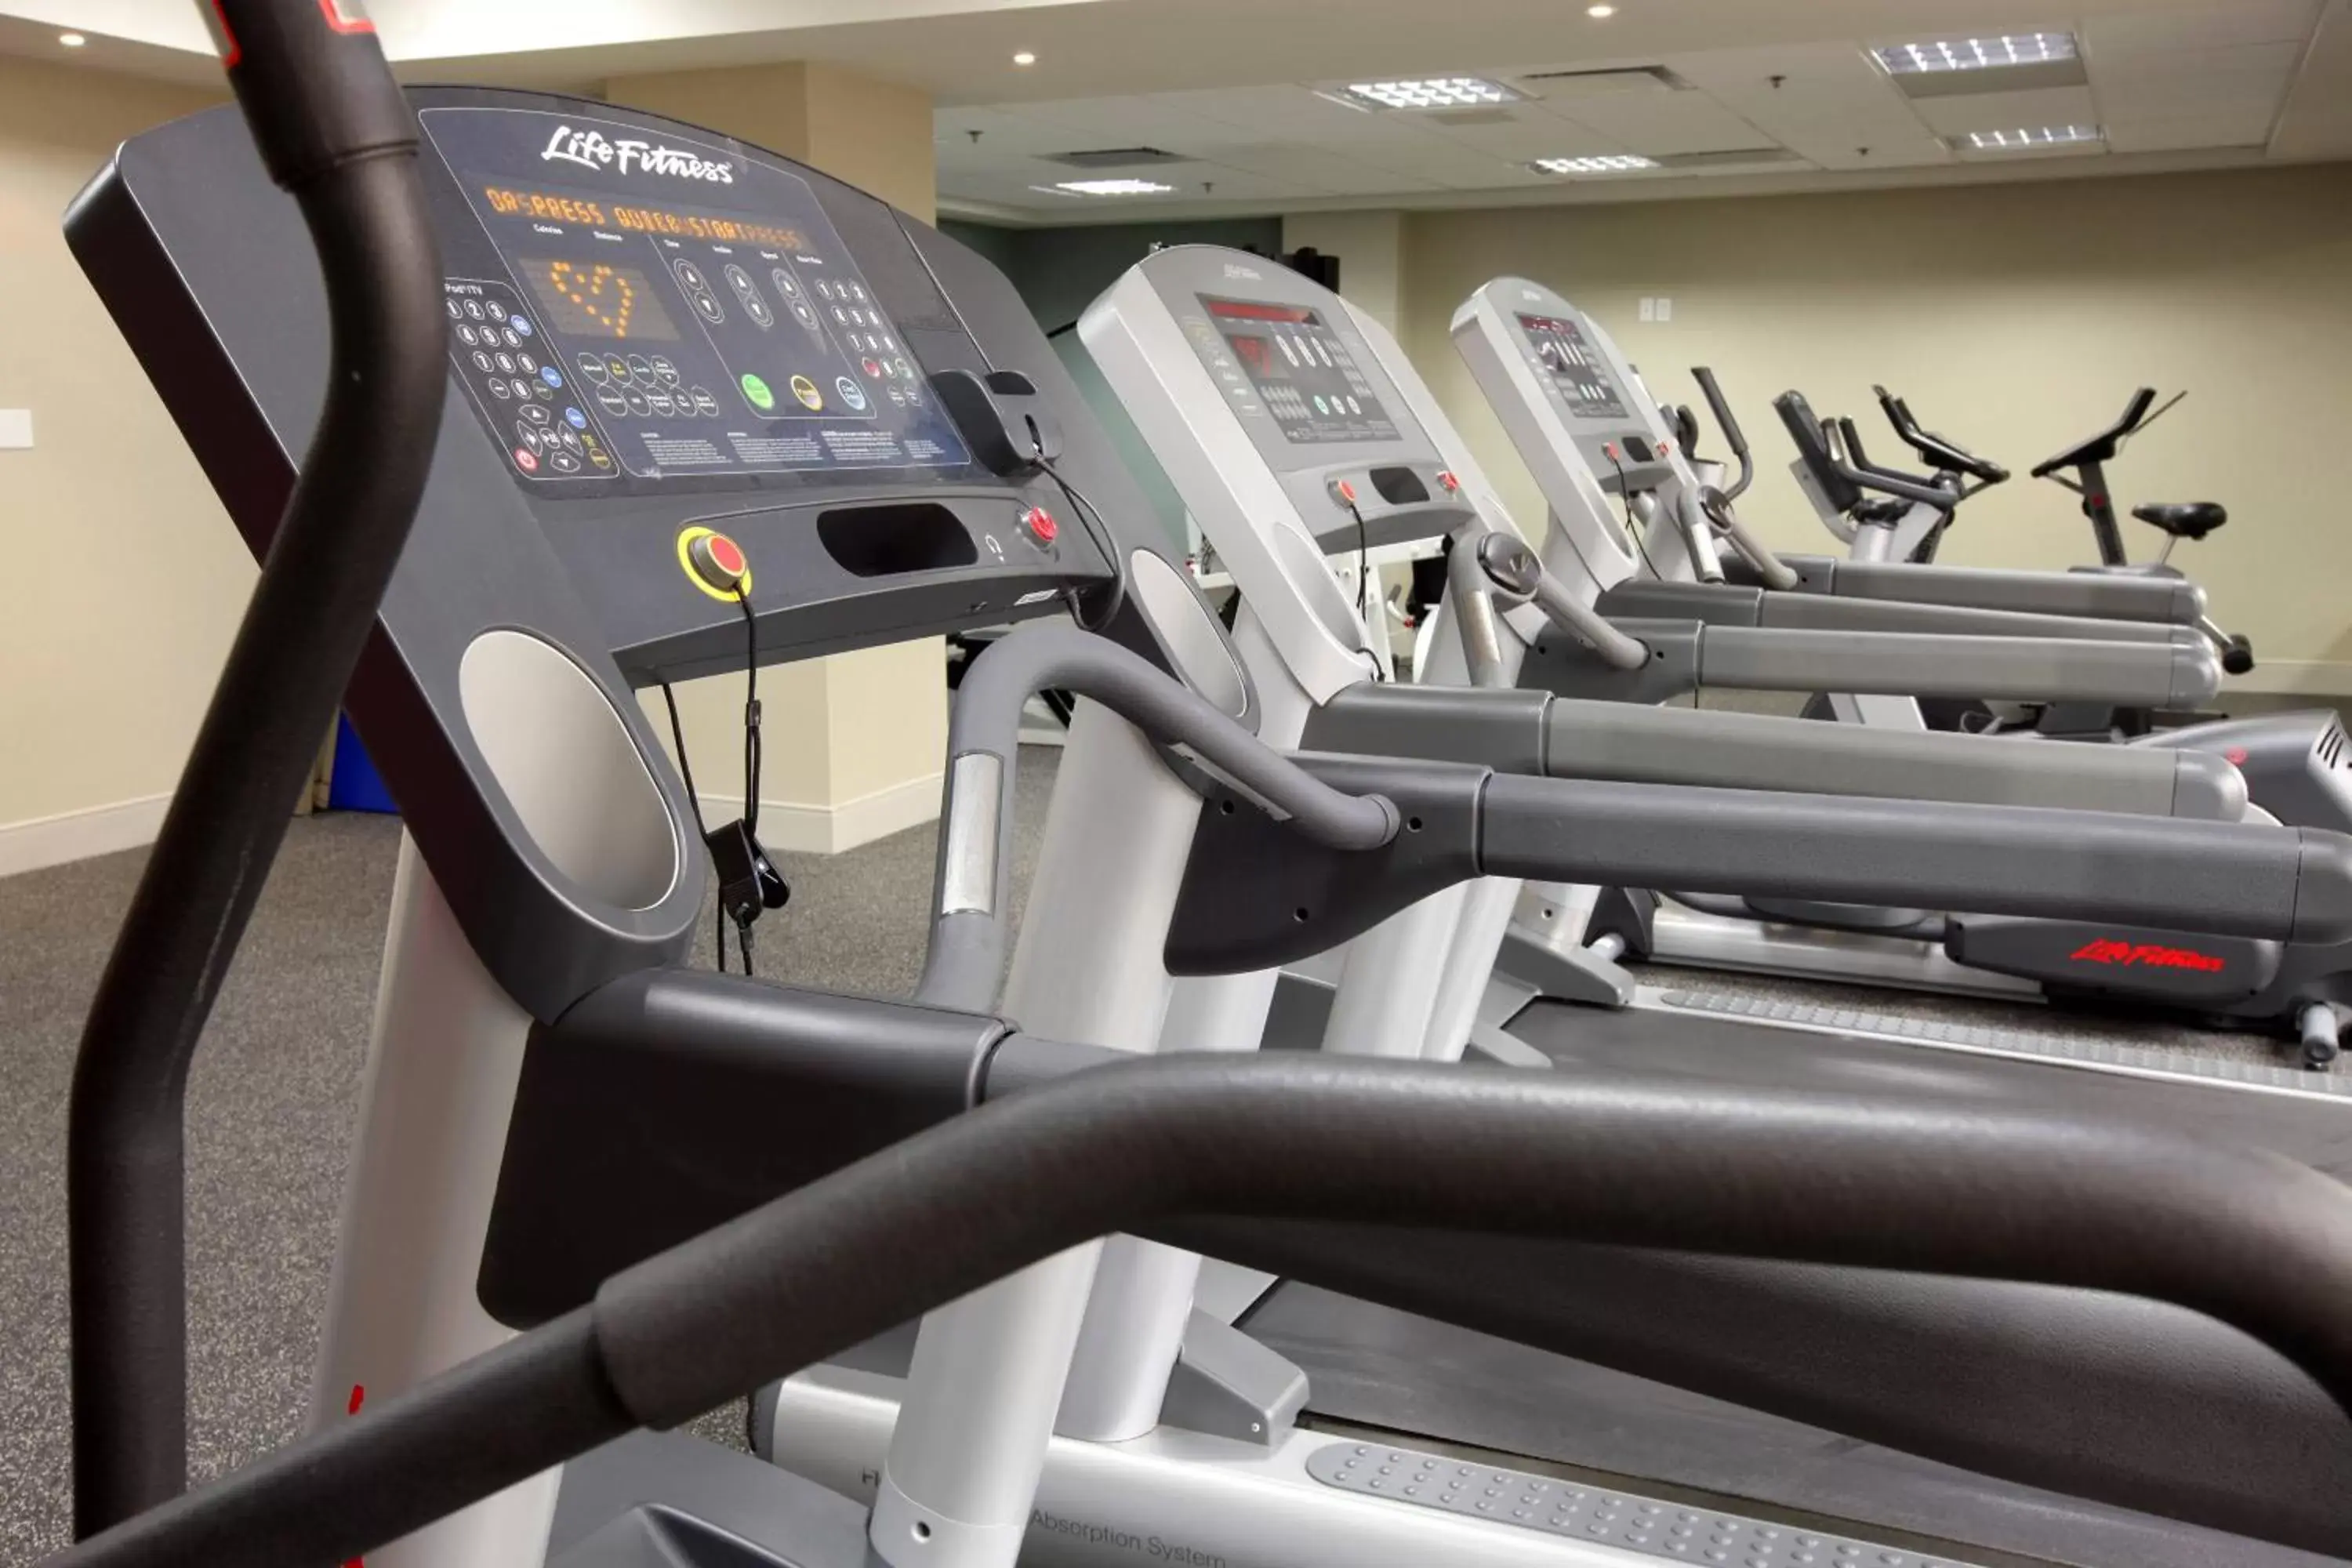 Fitness centre/facilities, Fitness Center/Facilities in Delta Hotels by Marriott Regina